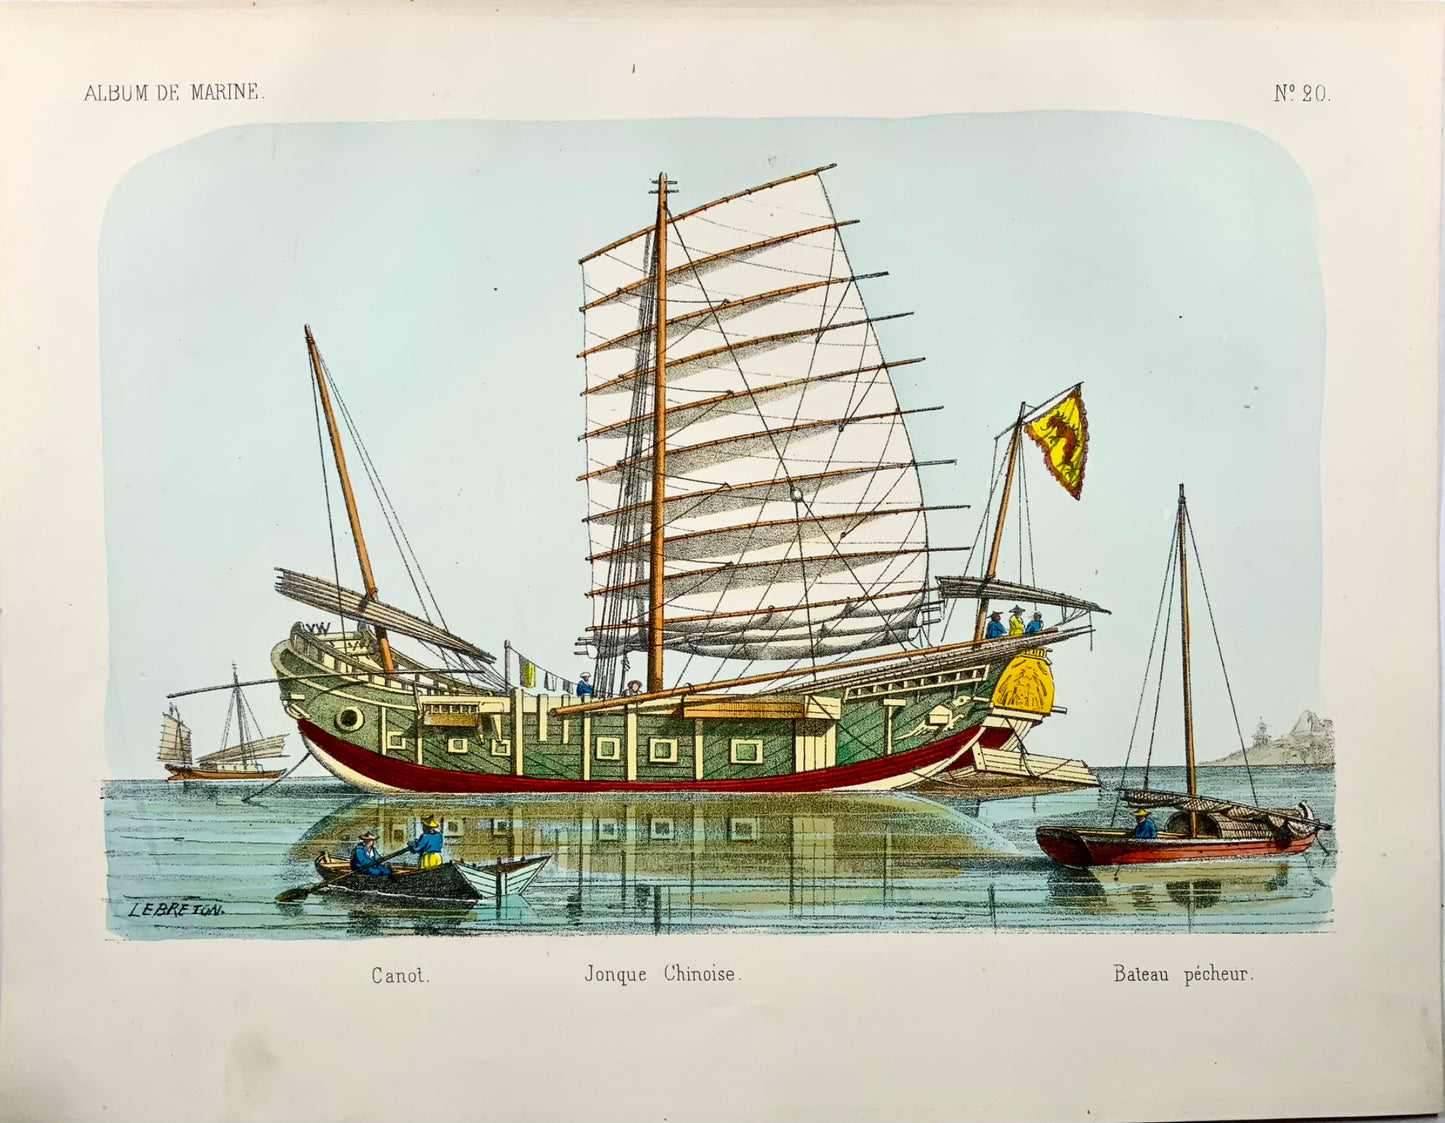 1860 vers. L. Lebreton, Junk Ship chinois, lithographie in-folio sur pierre, couleur à la main